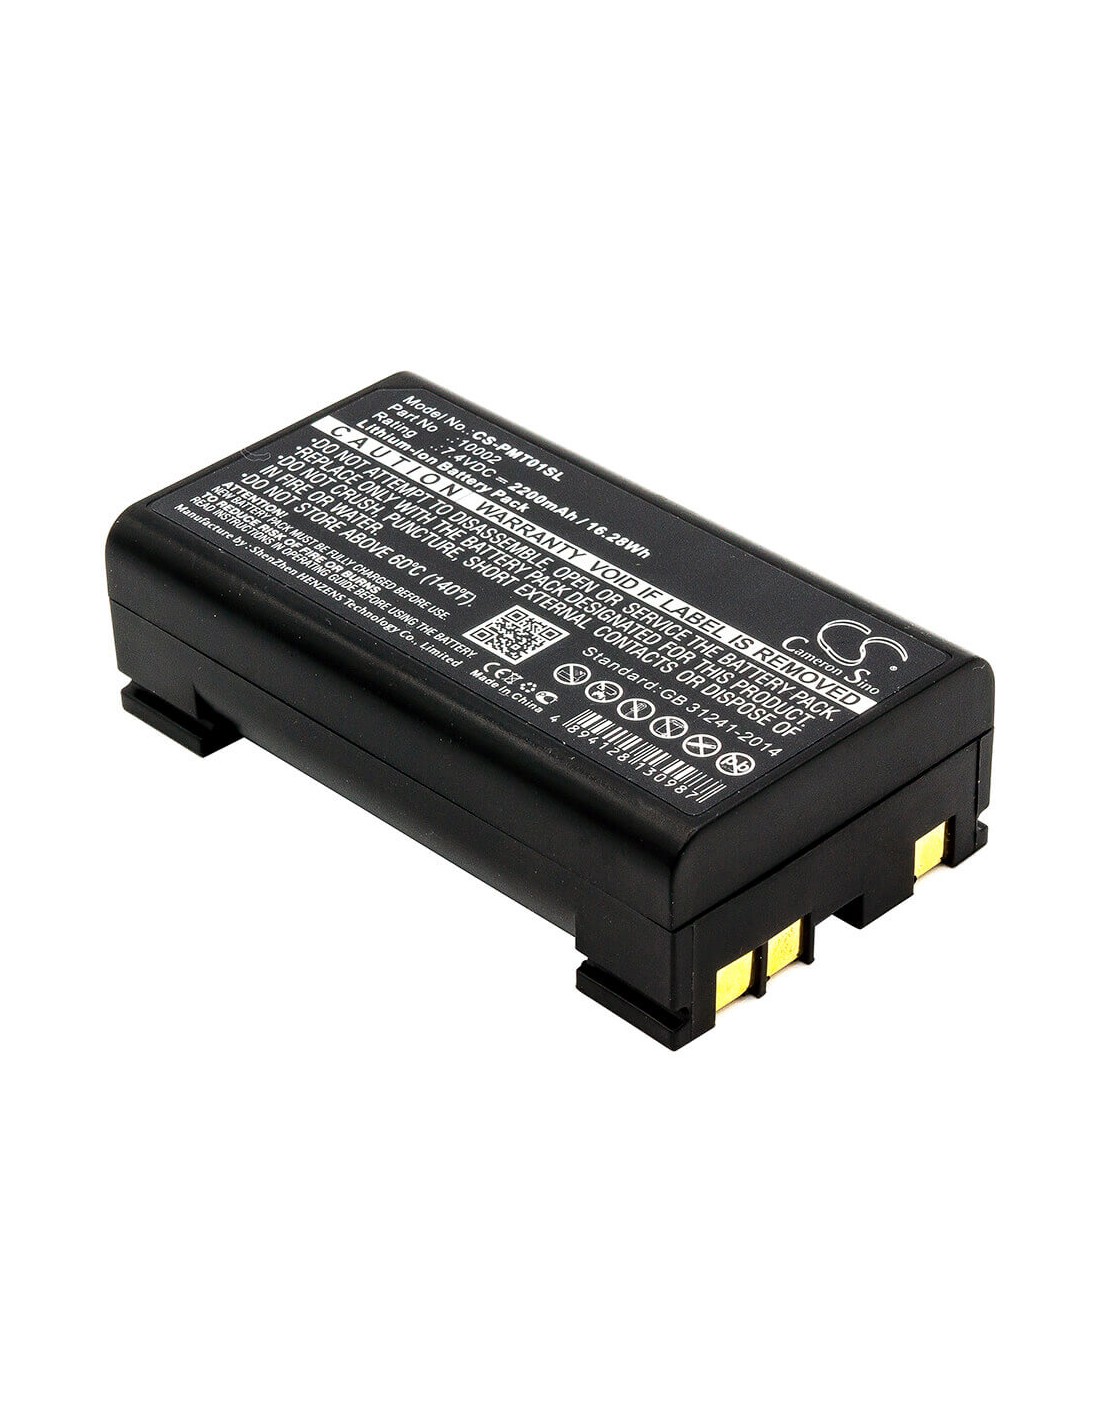 Battery for Pentax, Gps Rtk 7.4V, 2200mAh - 16.28Wh